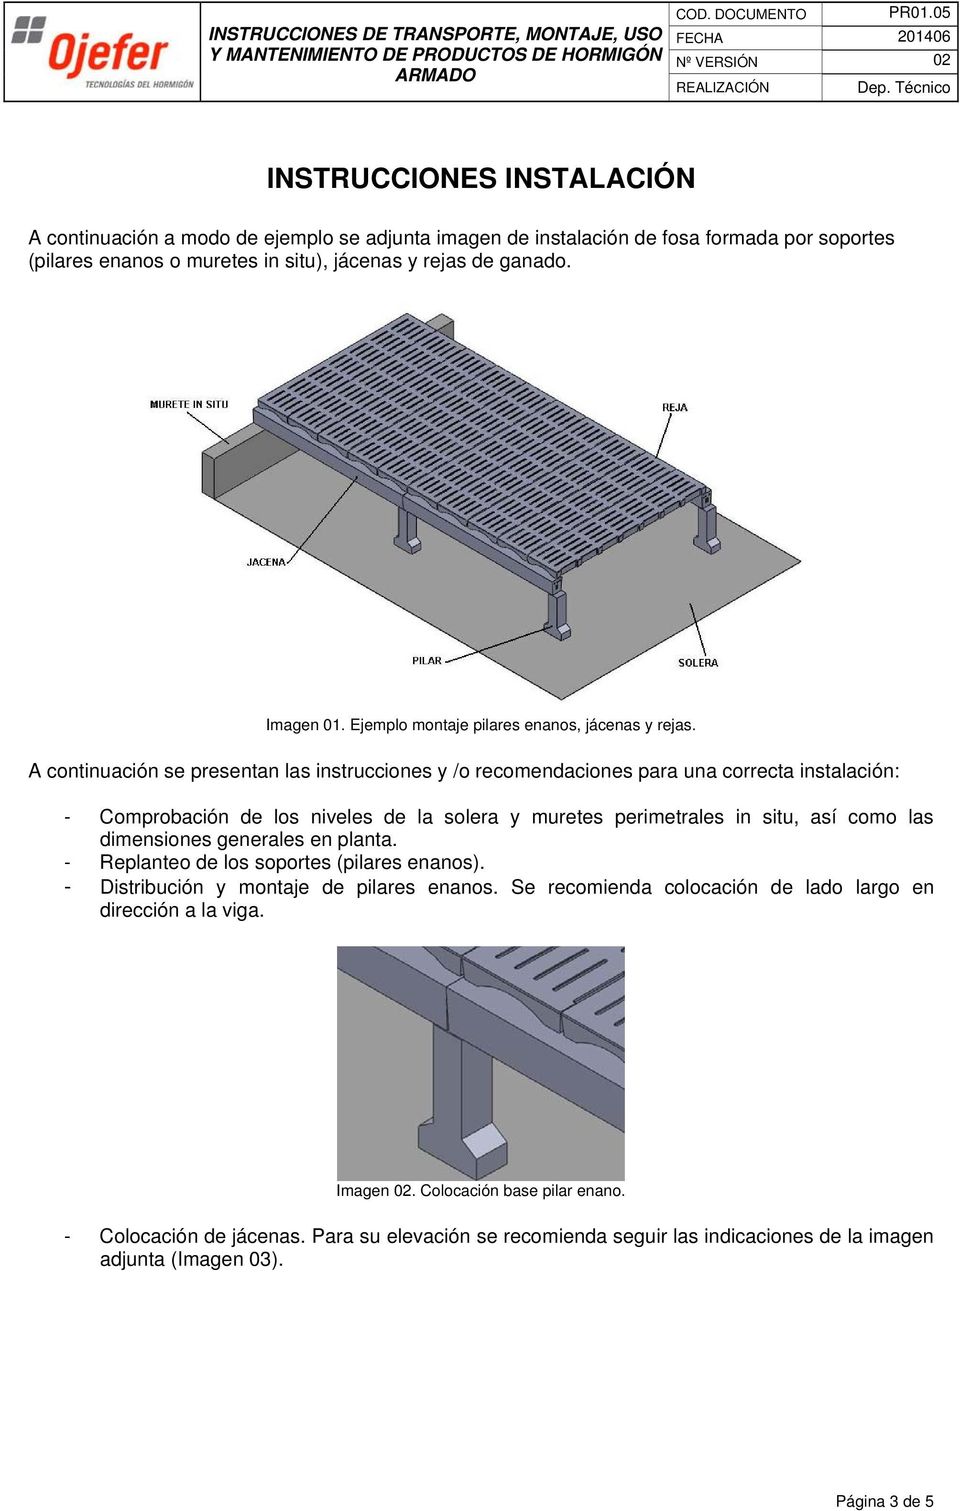 A continuación se presentan las instrucciones y /o recomendaciones para una correcta instalación: - Comprobación de los niveles de la solera y muretes perimetrales in situ, así como las